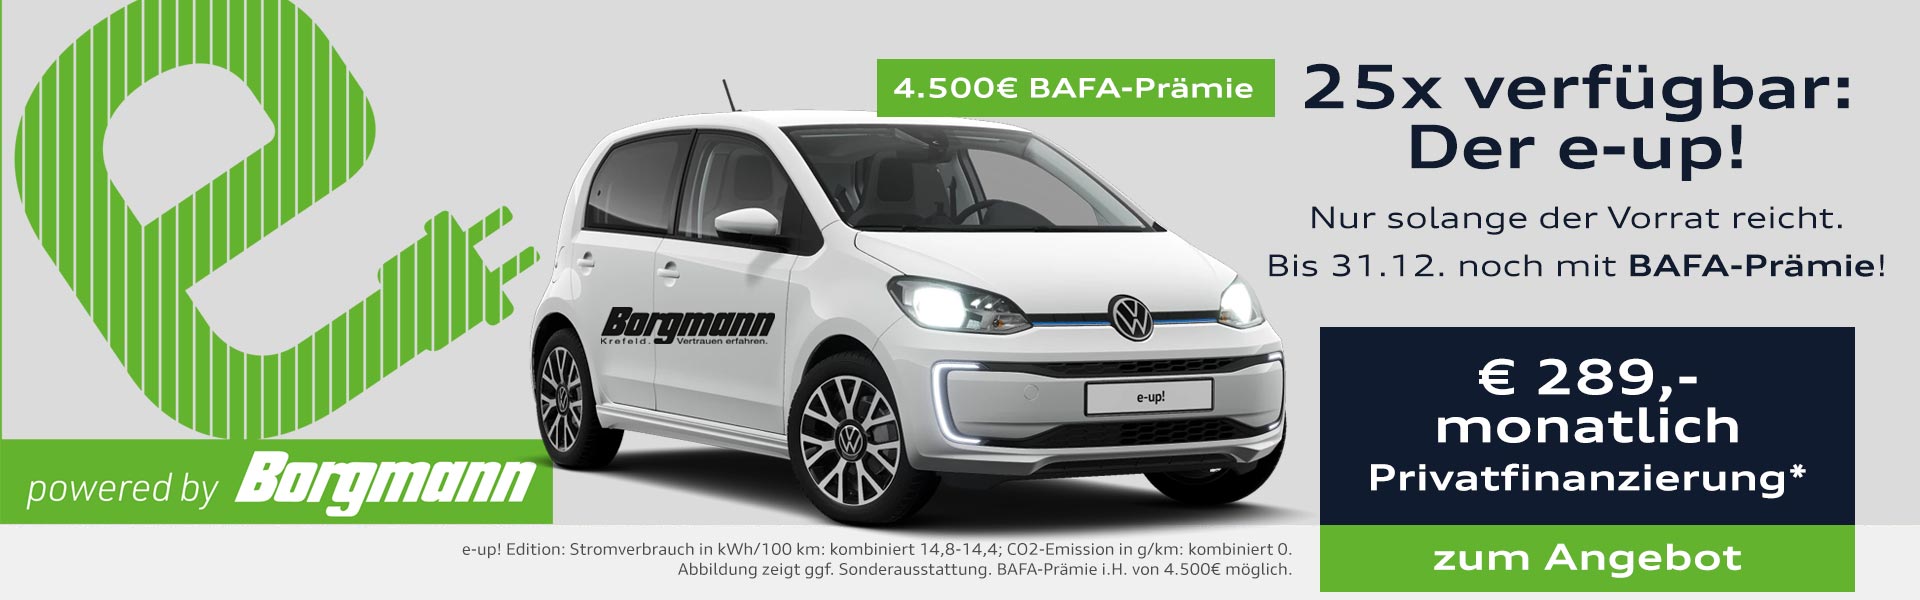 25 e-up von Volkswagen Borgmann sofort verfügbar